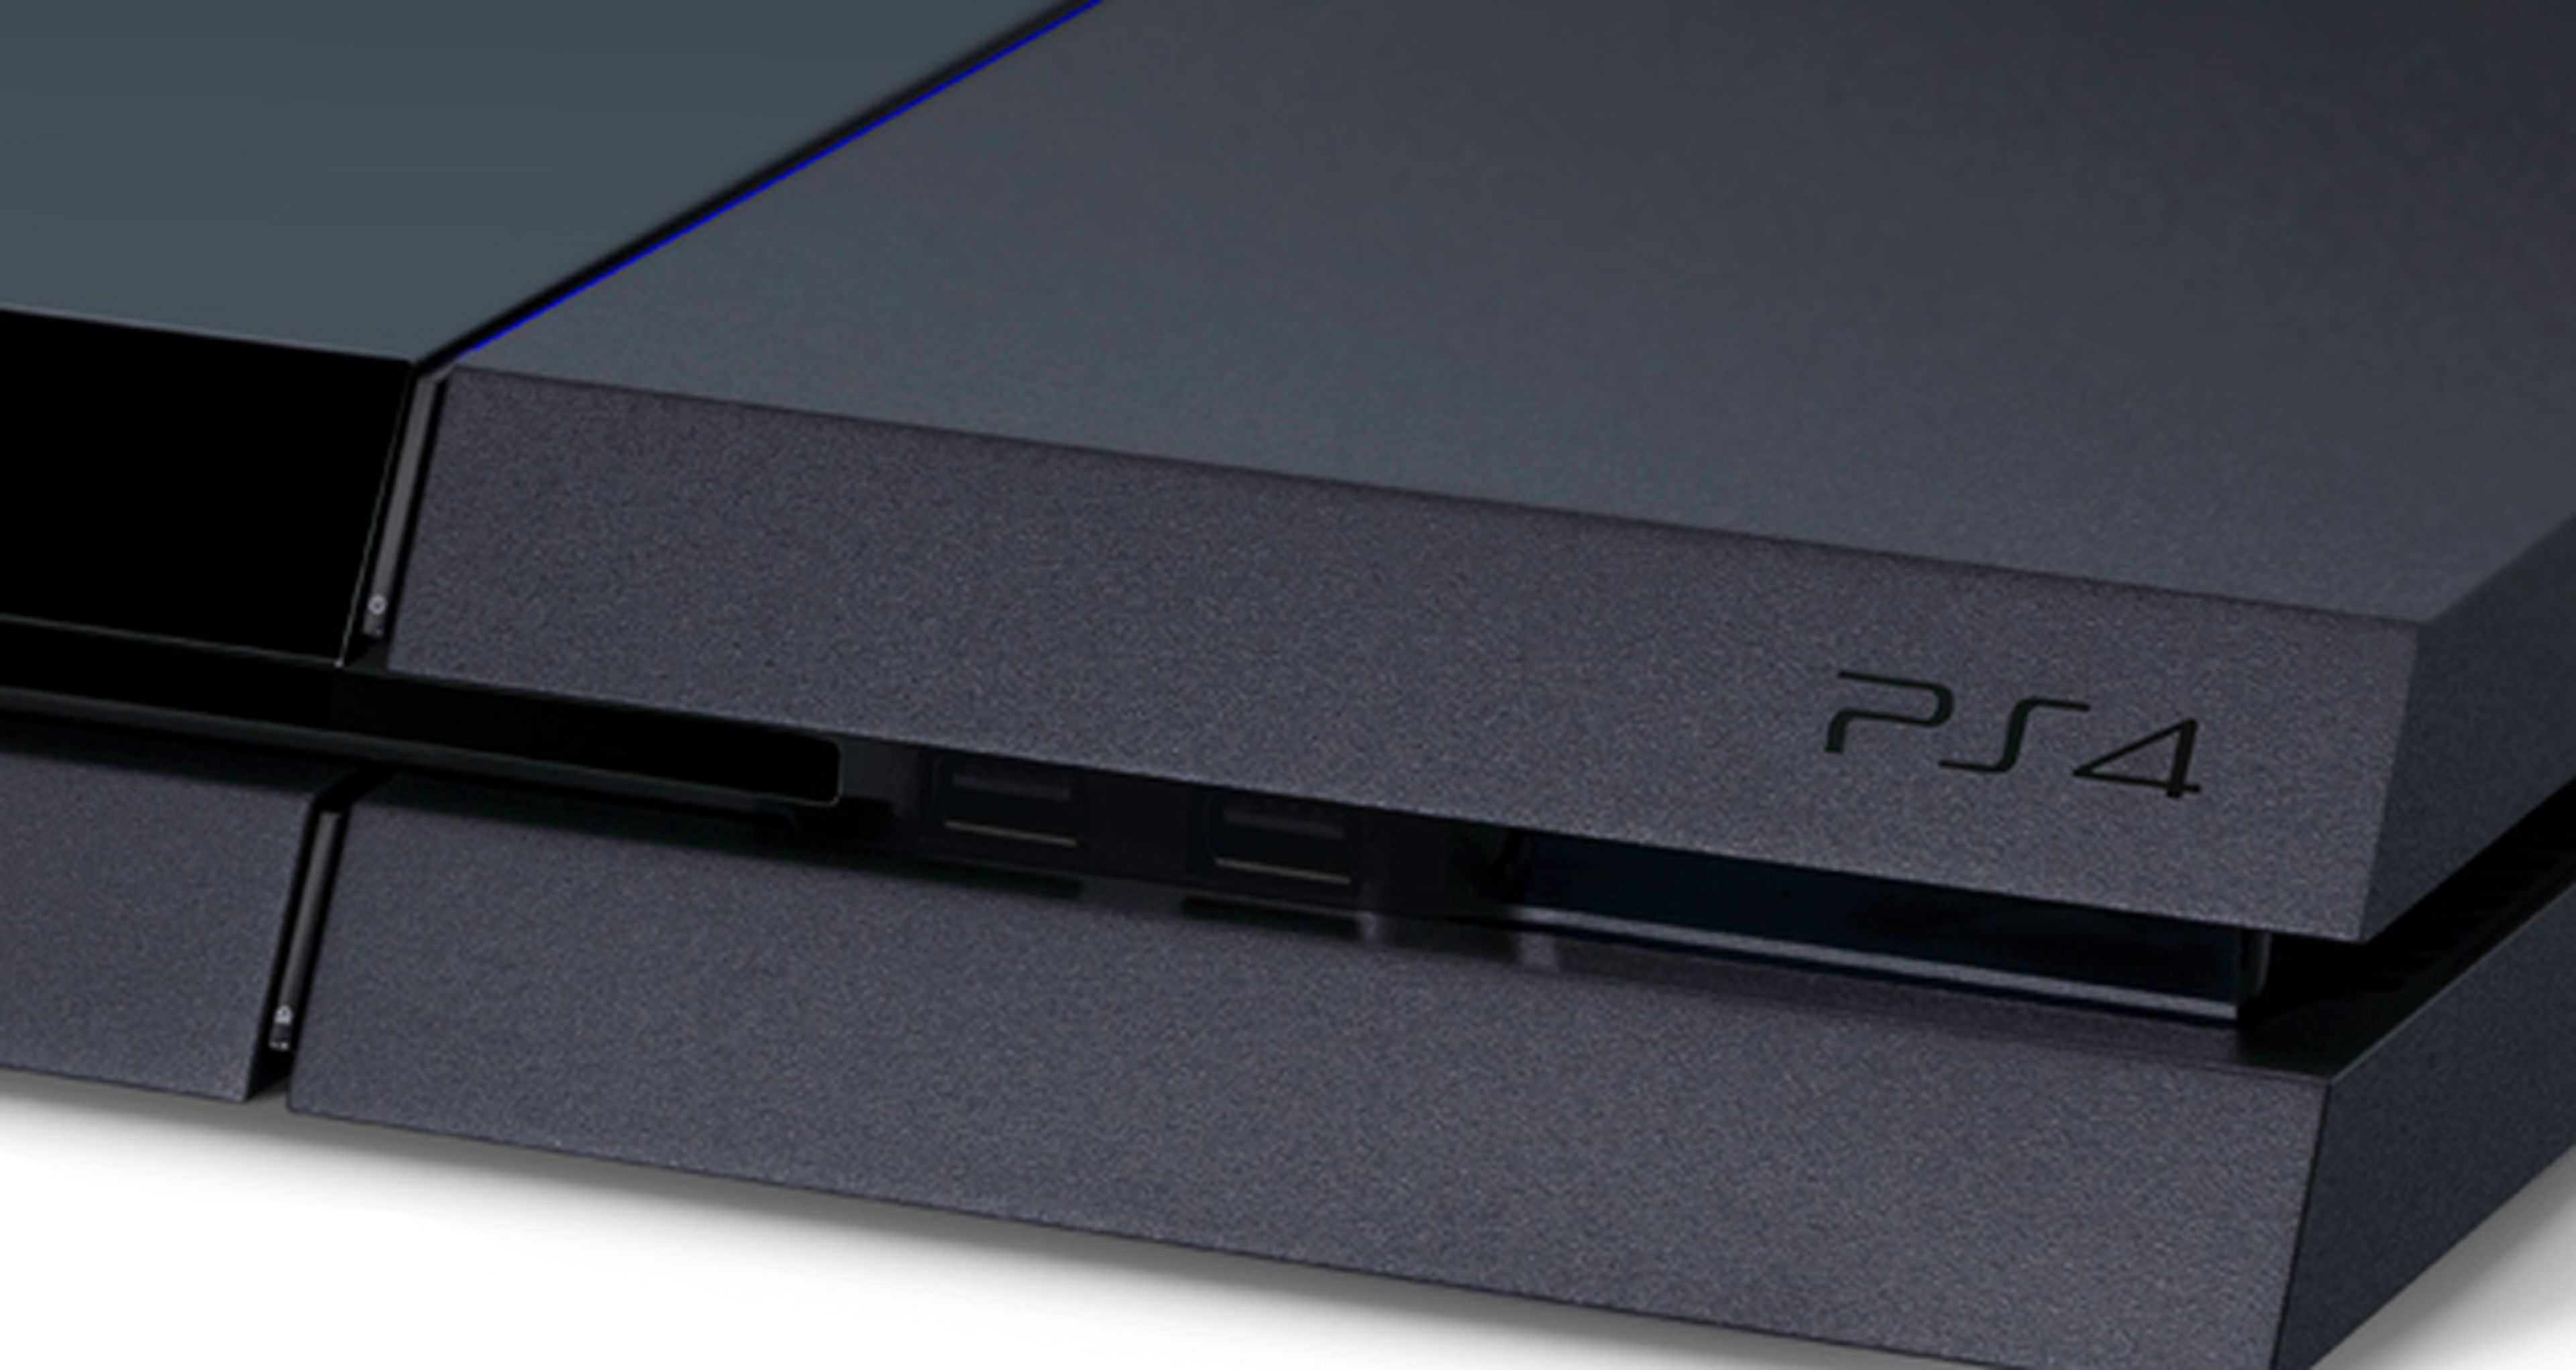 PS4 no permitirá instalaciones en discos duros externos